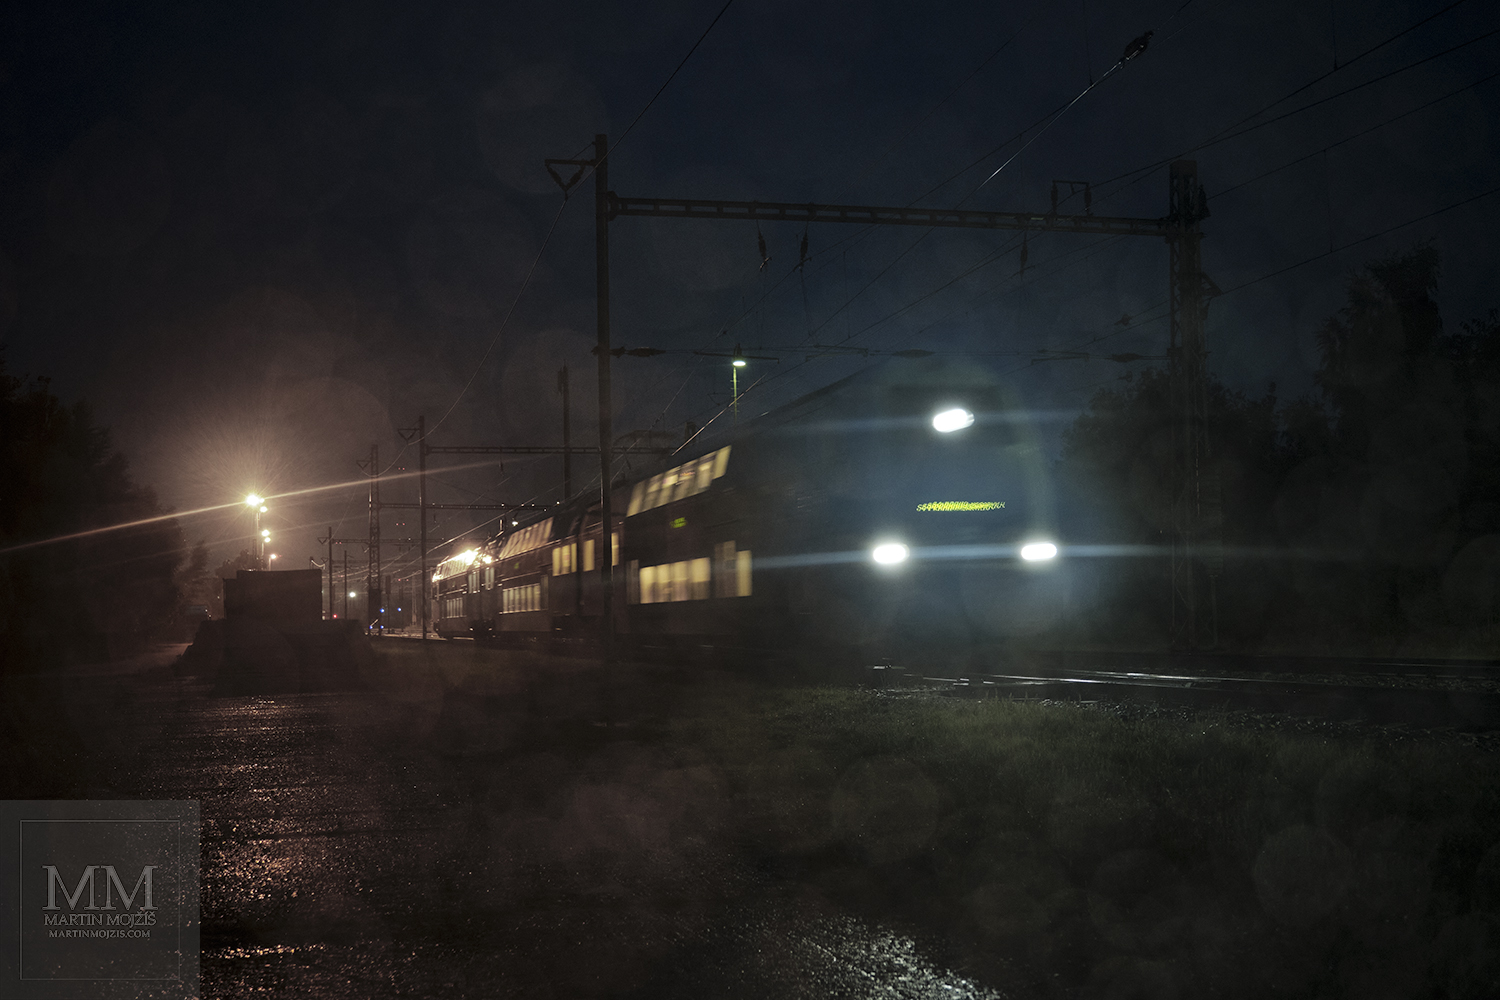 Vlak jedoucí deštivým ránem před svítáním. Umělecká fotografie s názvem RÁNO V TICHU DEŠTĚ. Fotograf Martin Mojžíš.